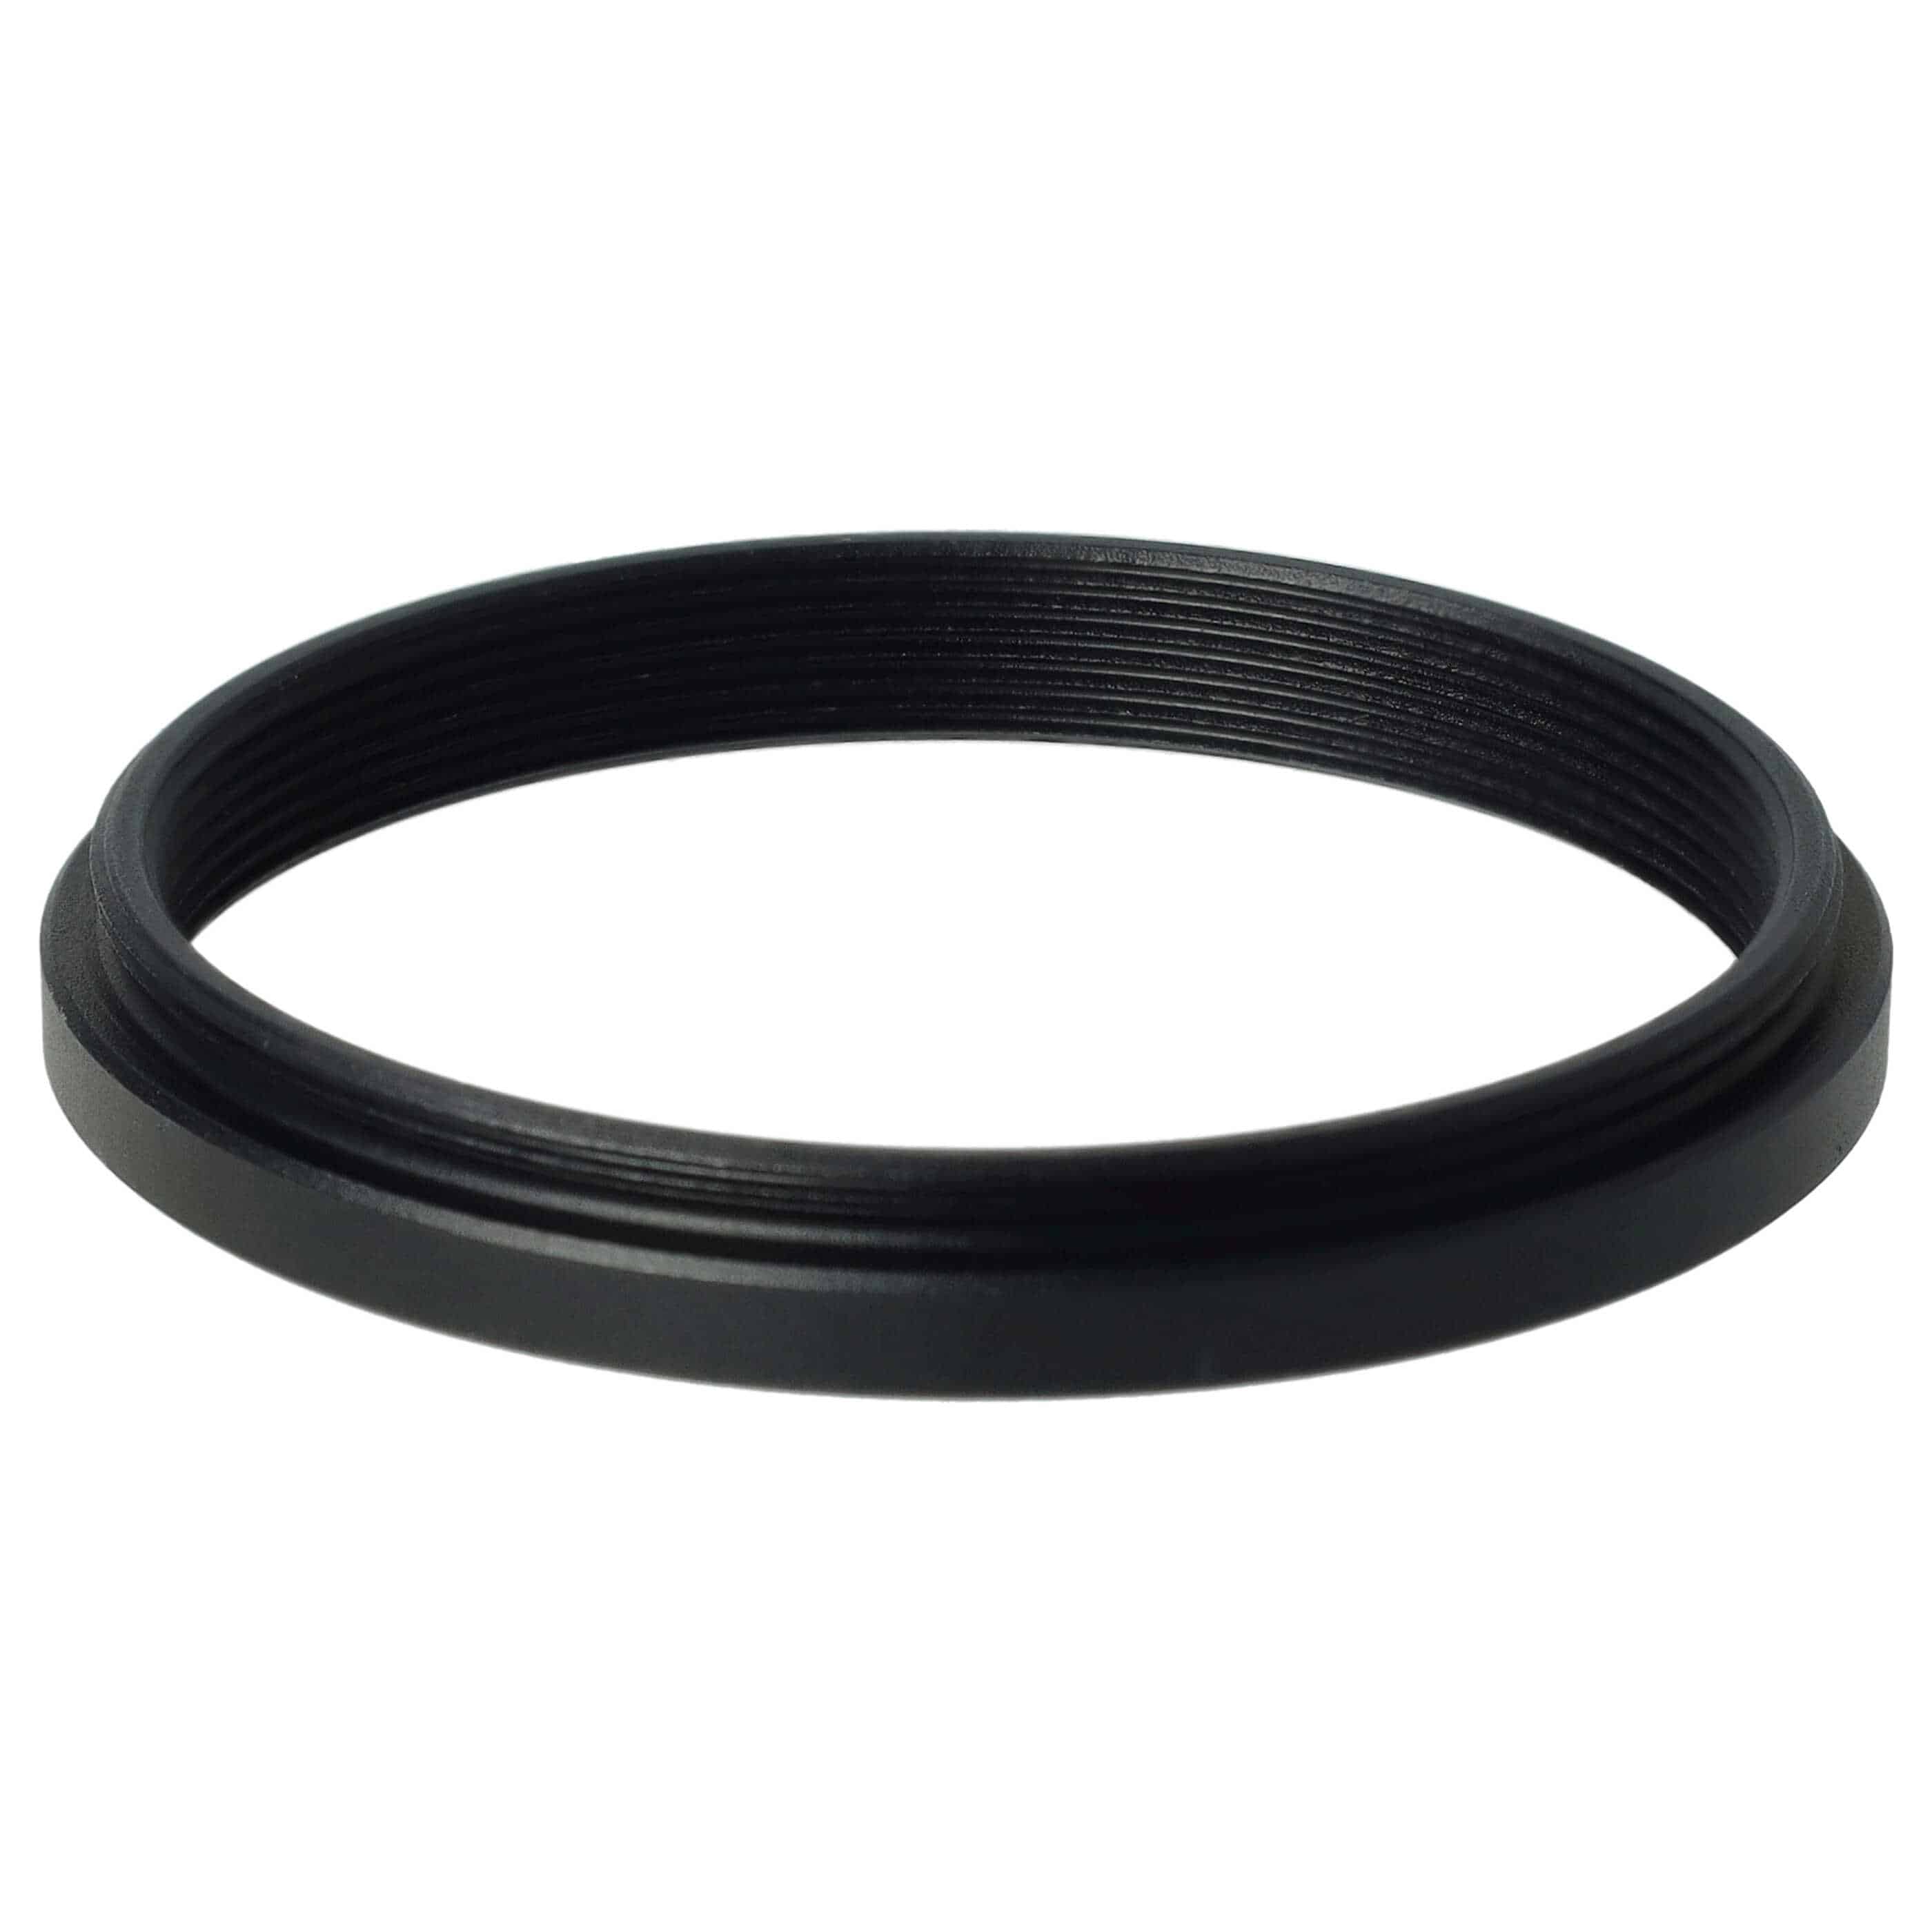 Step-Down-Ring Adapter von 46 mm auf 43 mm passend für Kamera Objektiv - Filteradapter, Metall, schwarz